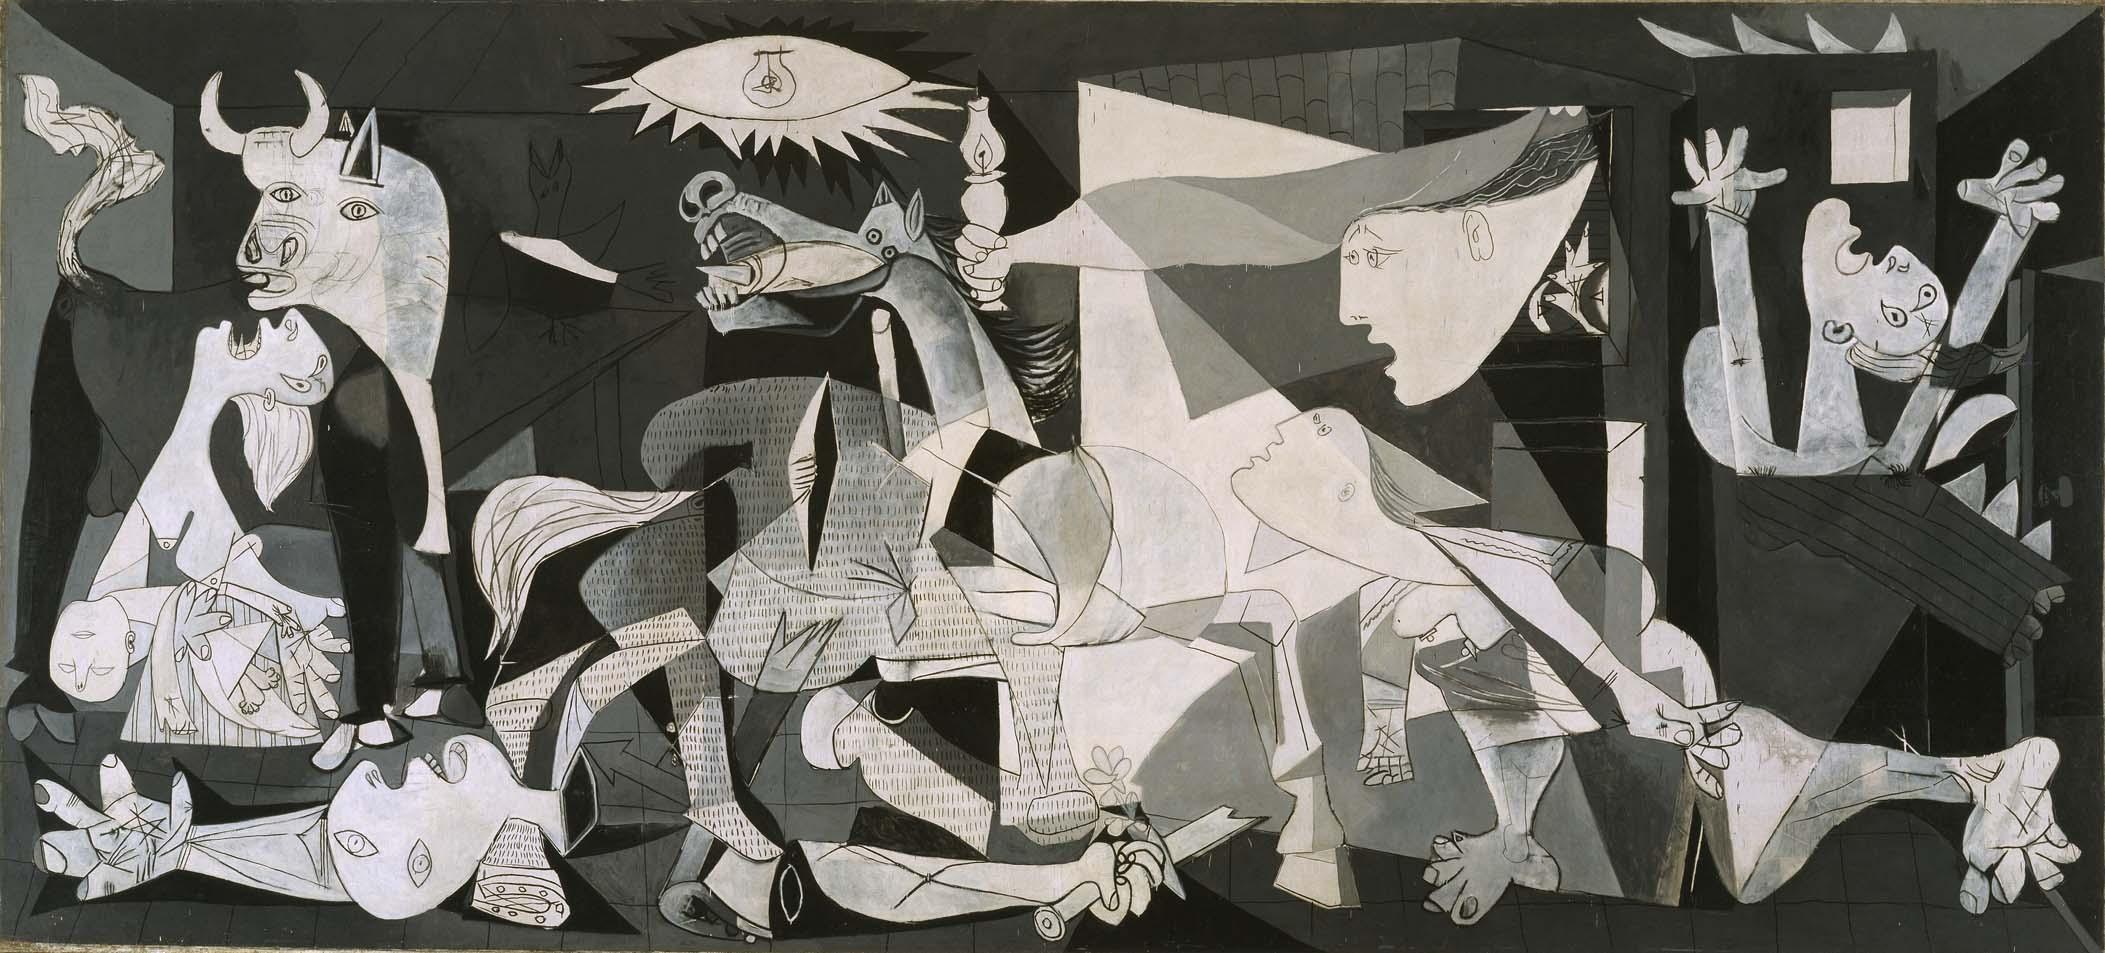 Guernica, Pablo Picasso. 1937. Óleo sobre lienzo 349 cm × 776 cm. Museo Reina Sofía